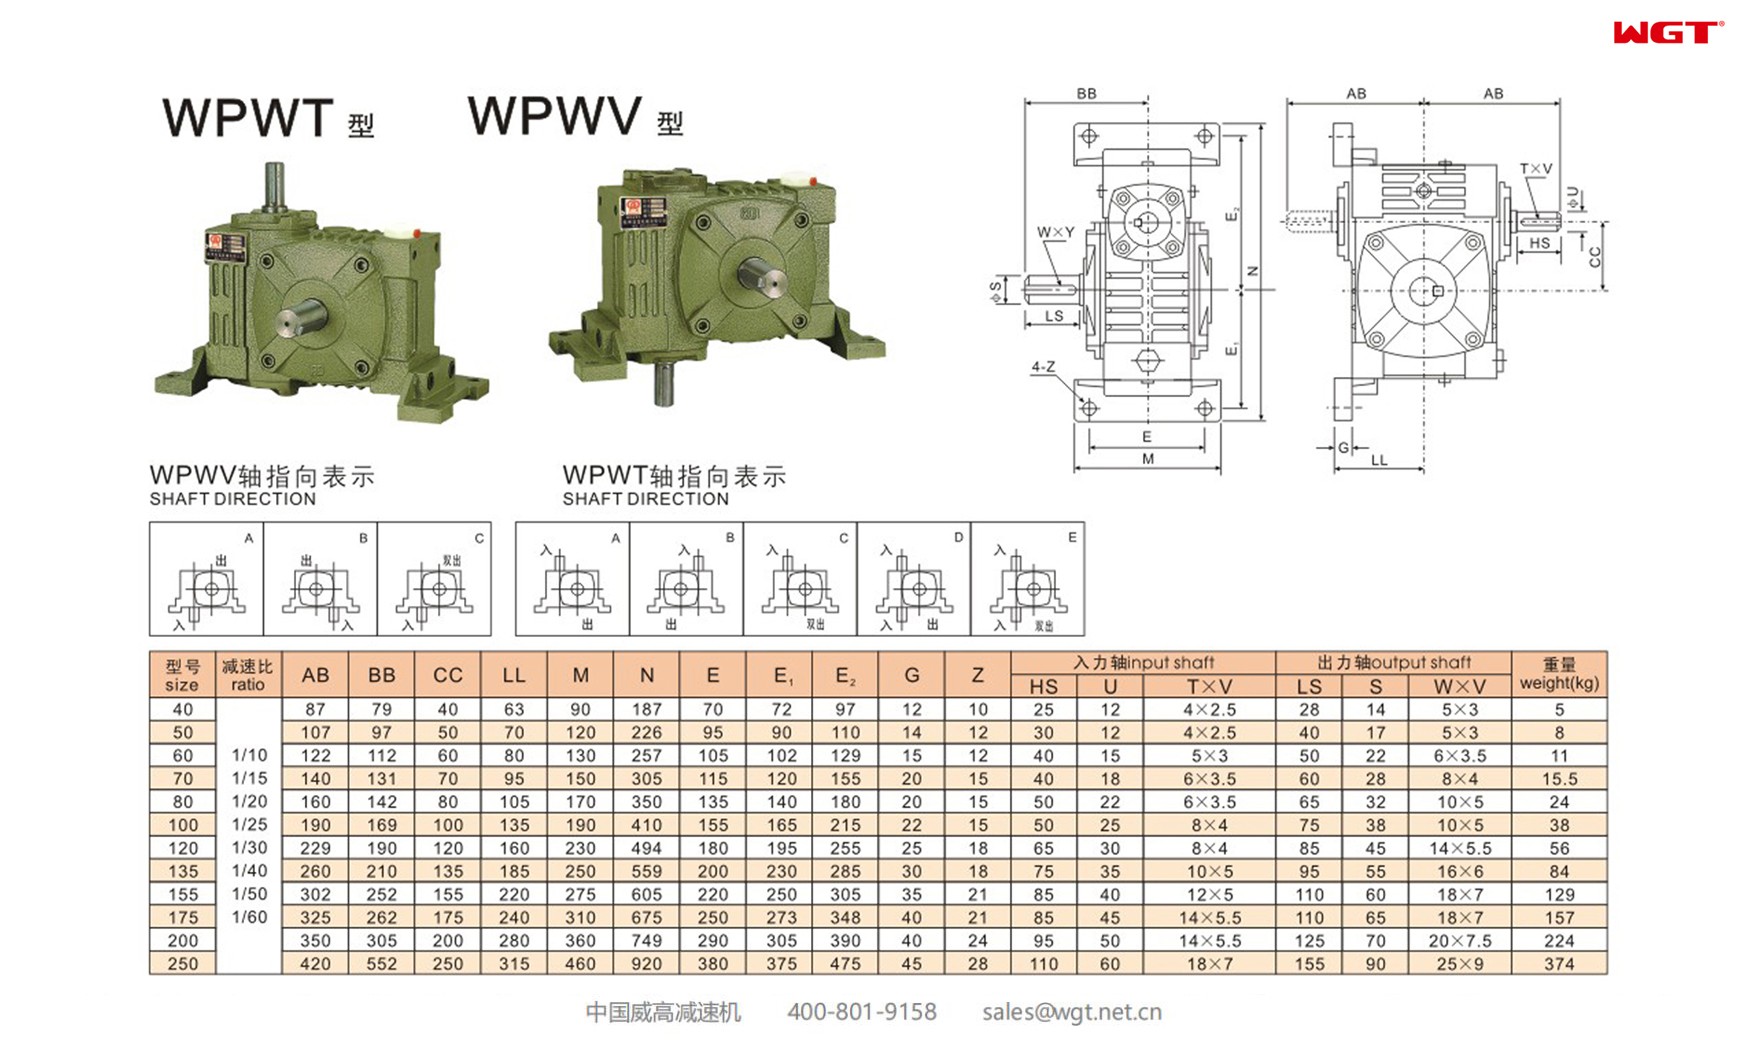 WPWT135 worm gear reducer universal speed reducer 